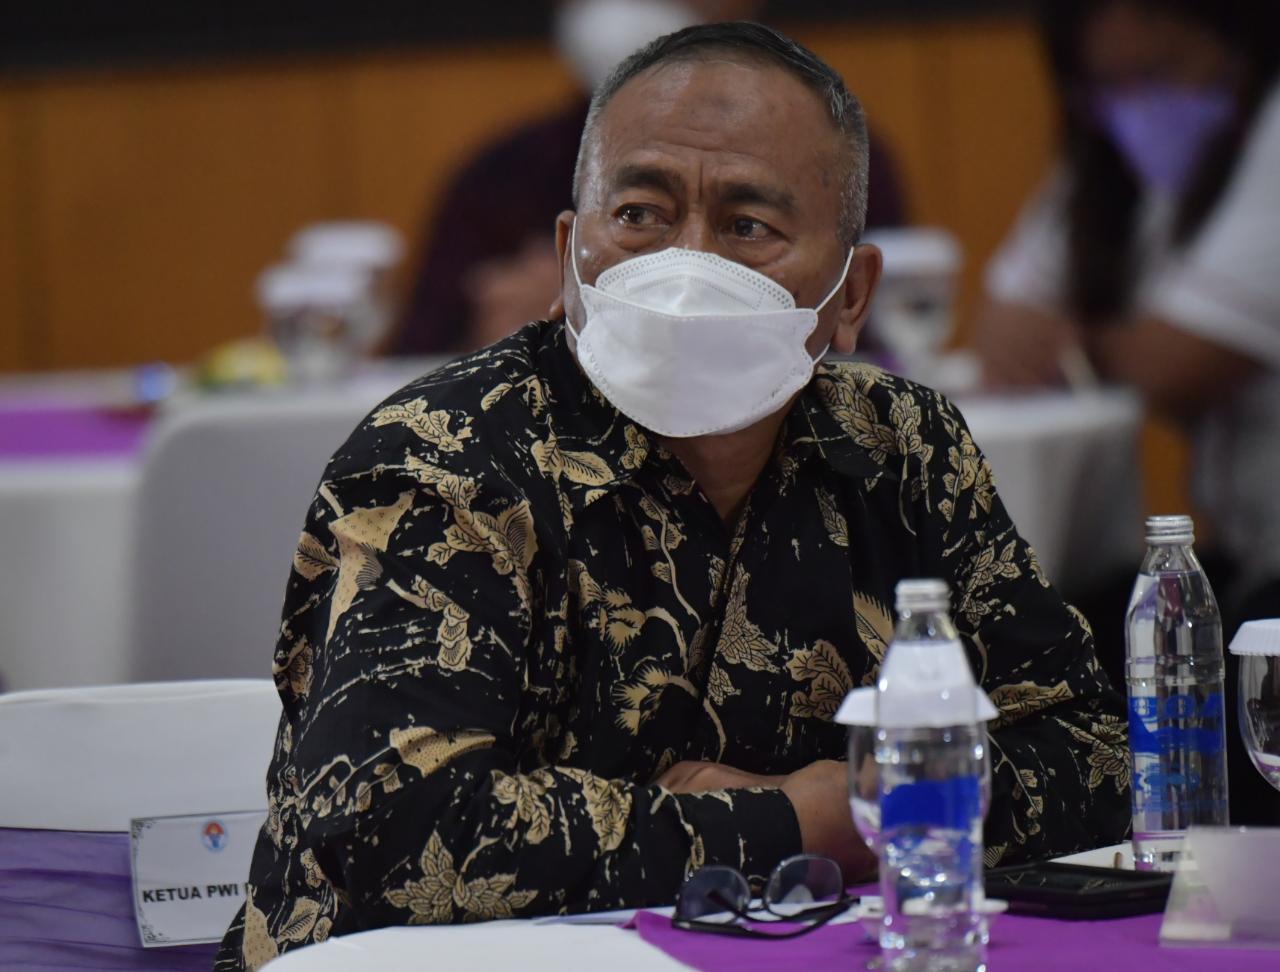 Ketua Umum Persatuan Wartawan Indonesia [PWI] Pusat, Atal S Depari